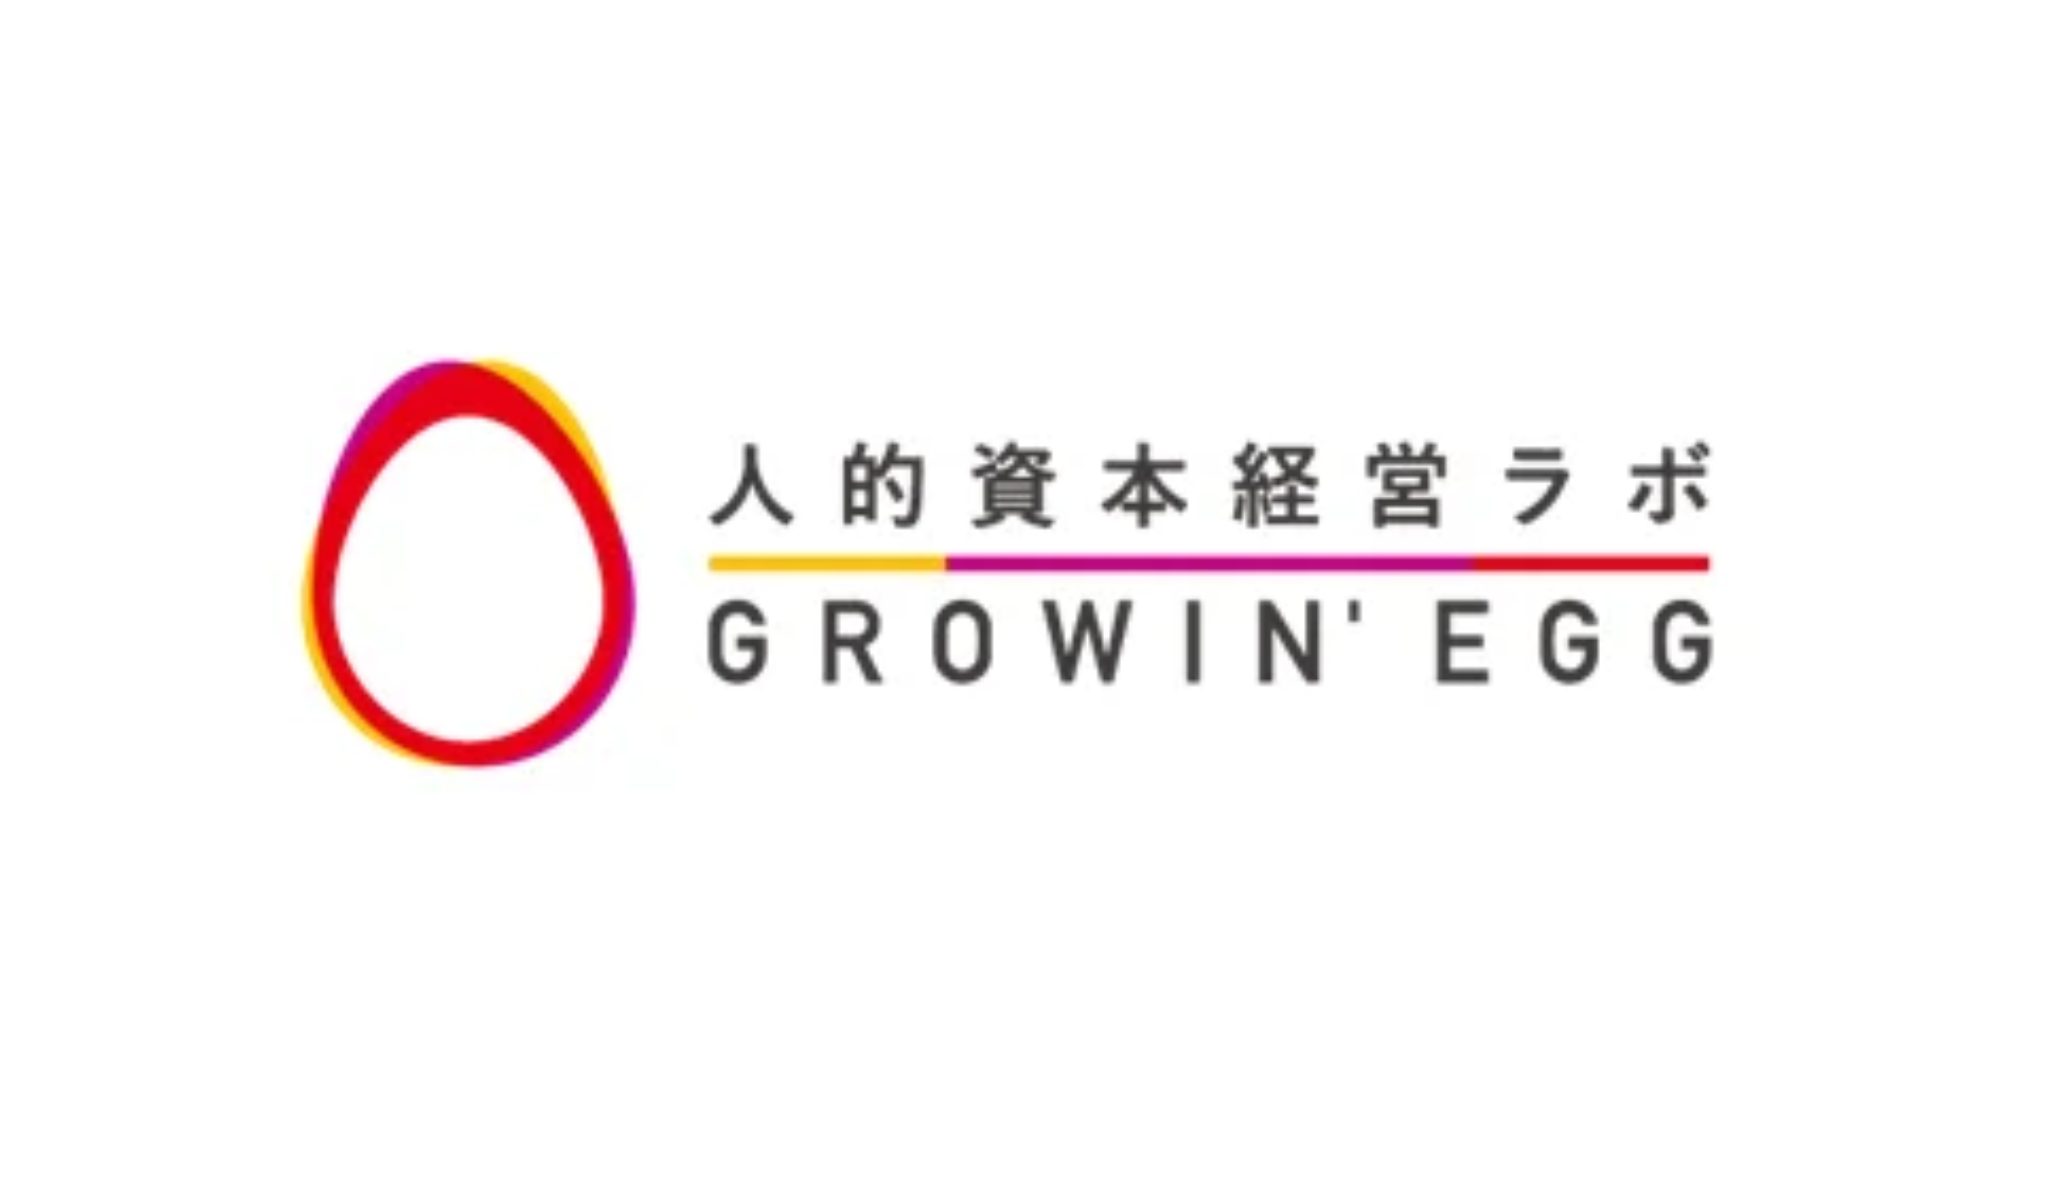 企業と人事の実践メディア「人的資本経営ラボGROWIN’ EGG」をエッグフォワード社が立ち上げ